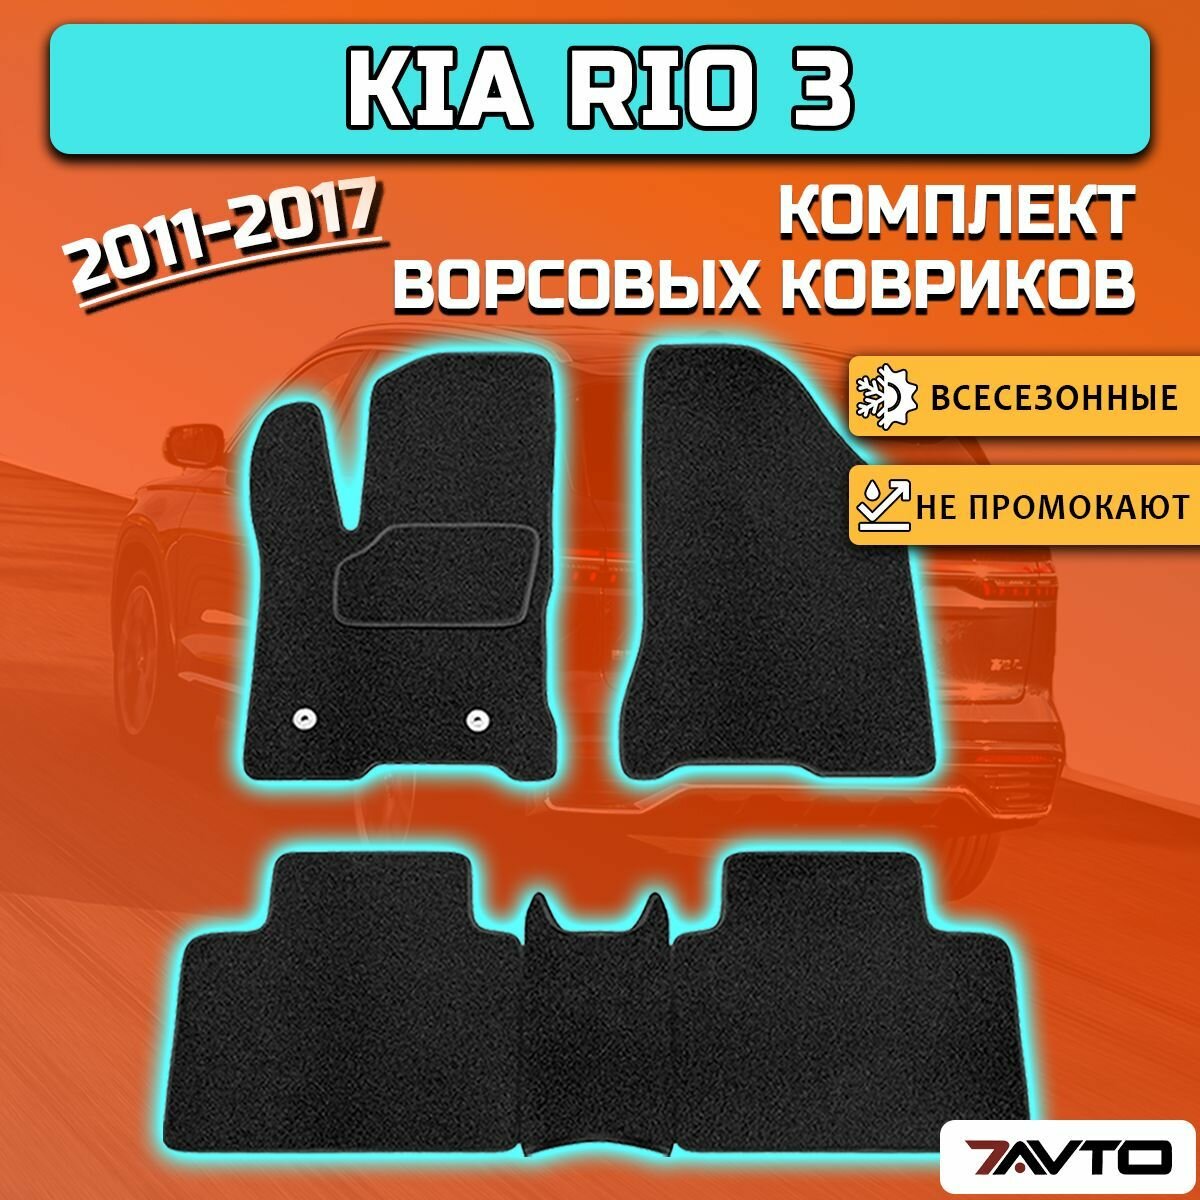 Комплект ворсовых ковриков ECO на Киа Рио 3 / Kia Rio 3 2011-2017